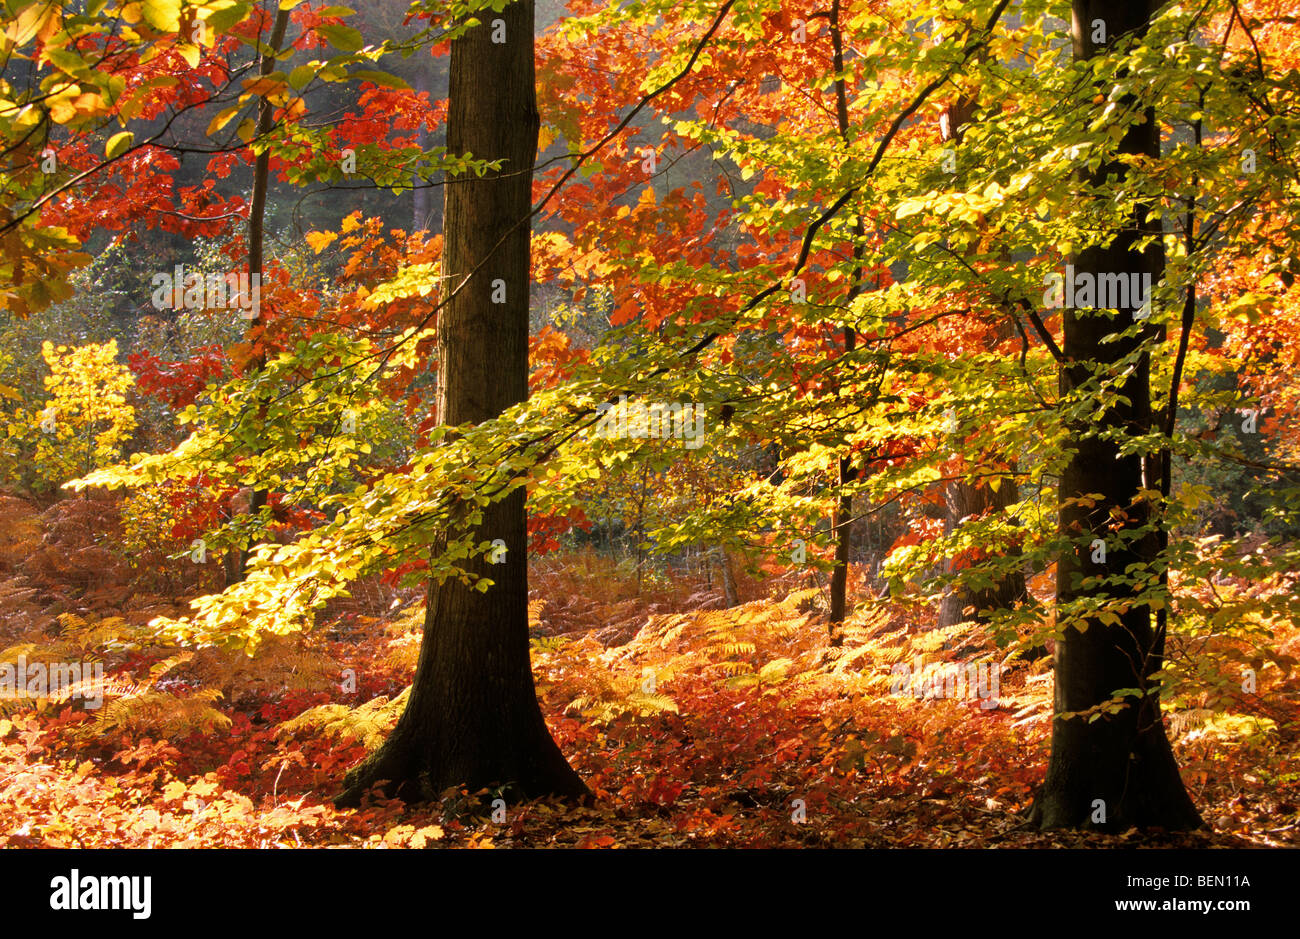 Les feuillus à larges feuilles / forêt en automne avec des arbres de chêne rouge (Quercus rubra) et le hêtre (Fagus sylvatica) Banque D'Images